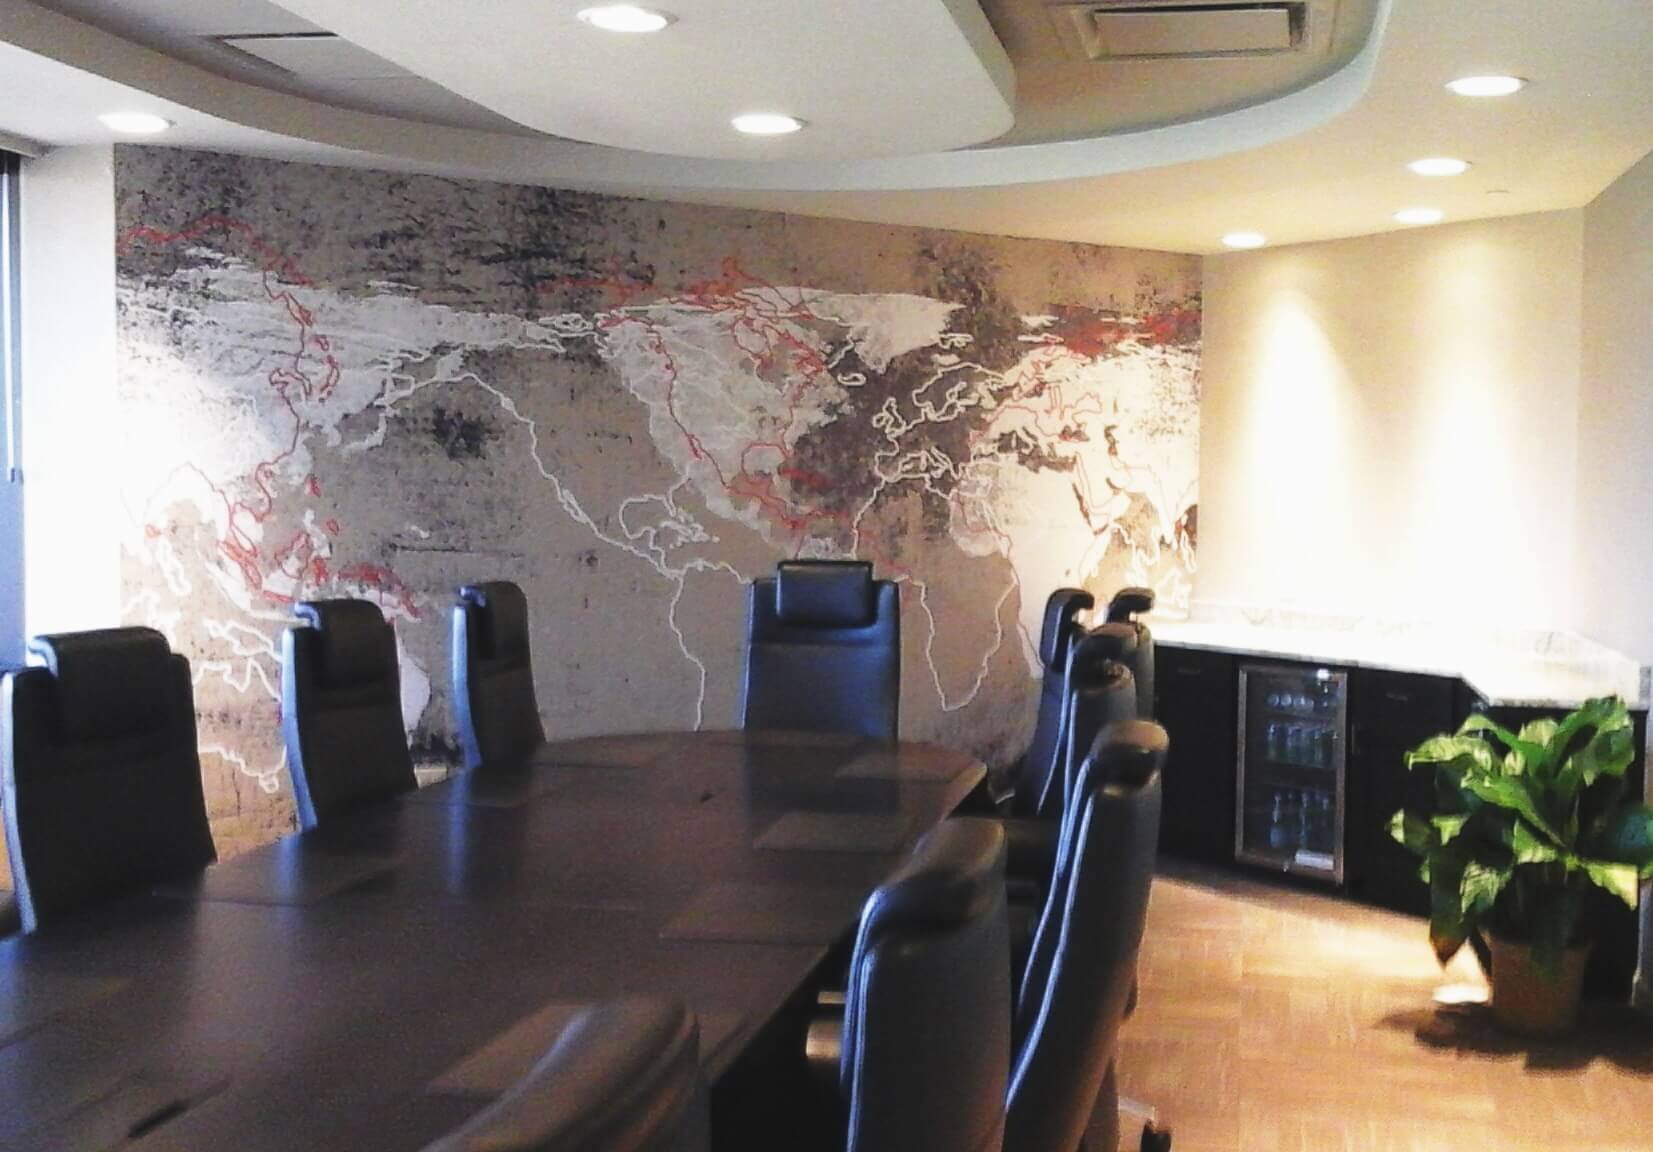 Corporate Boardroom Interior and Design